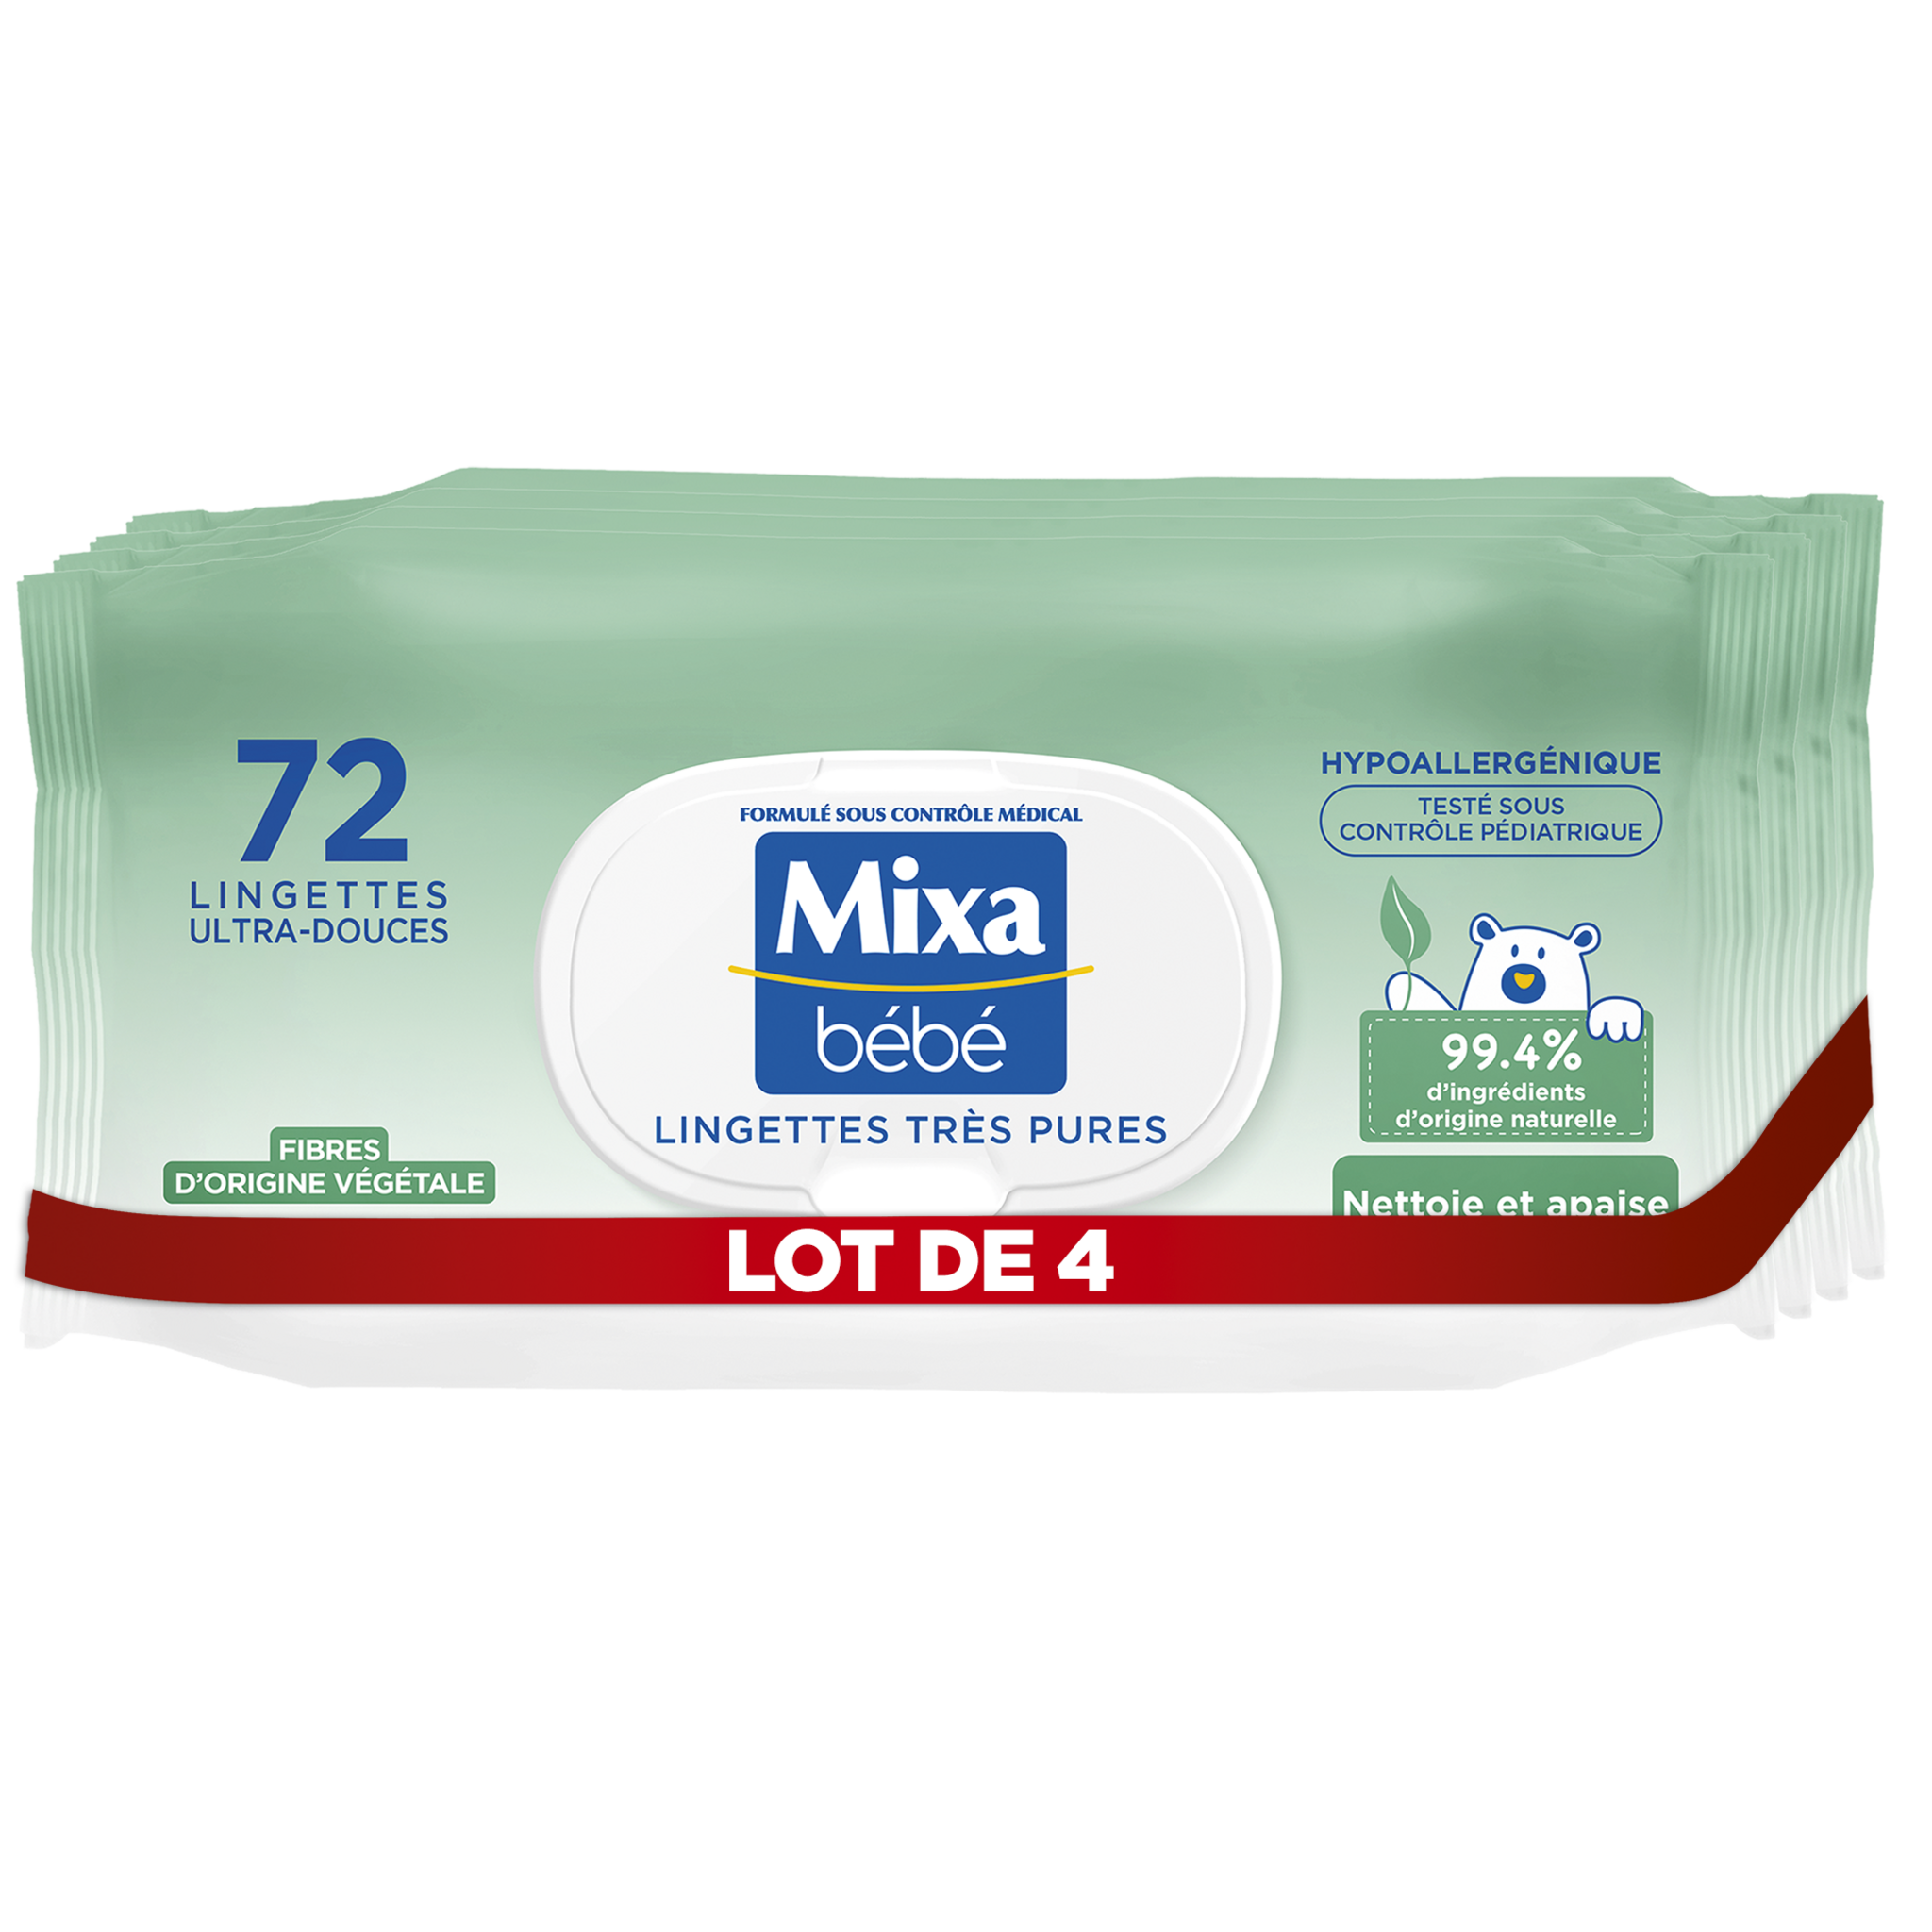 MIXA BEBE Lingettes très pures ultra douces fibres végétales 4x72